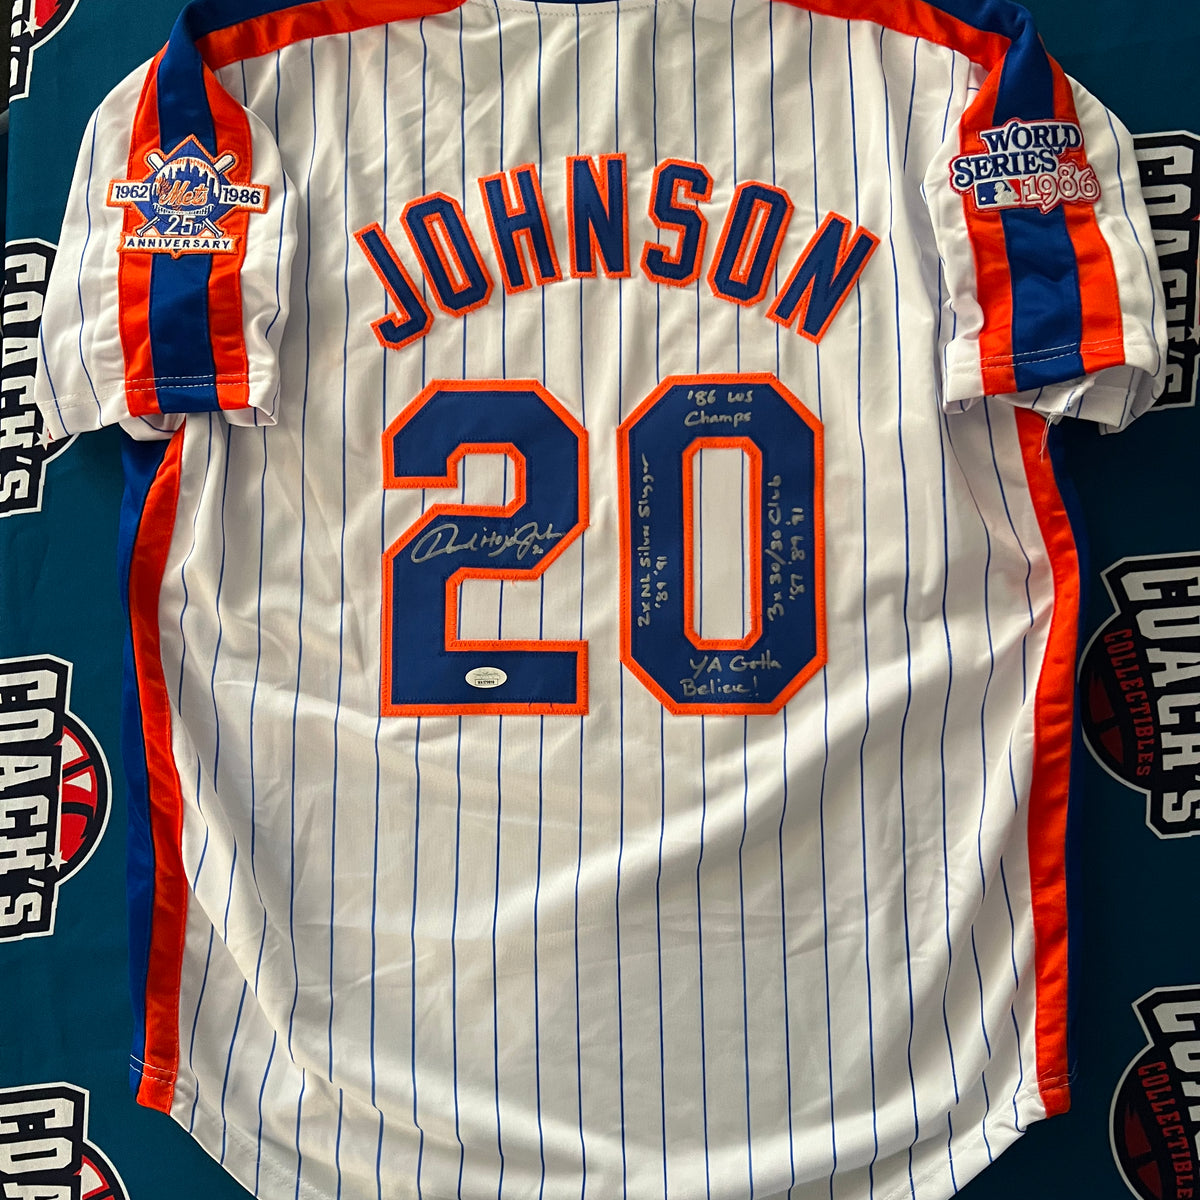 Howard Johnson Autographed CUSTOM NY Mets Jersey w/ Multi Inscr